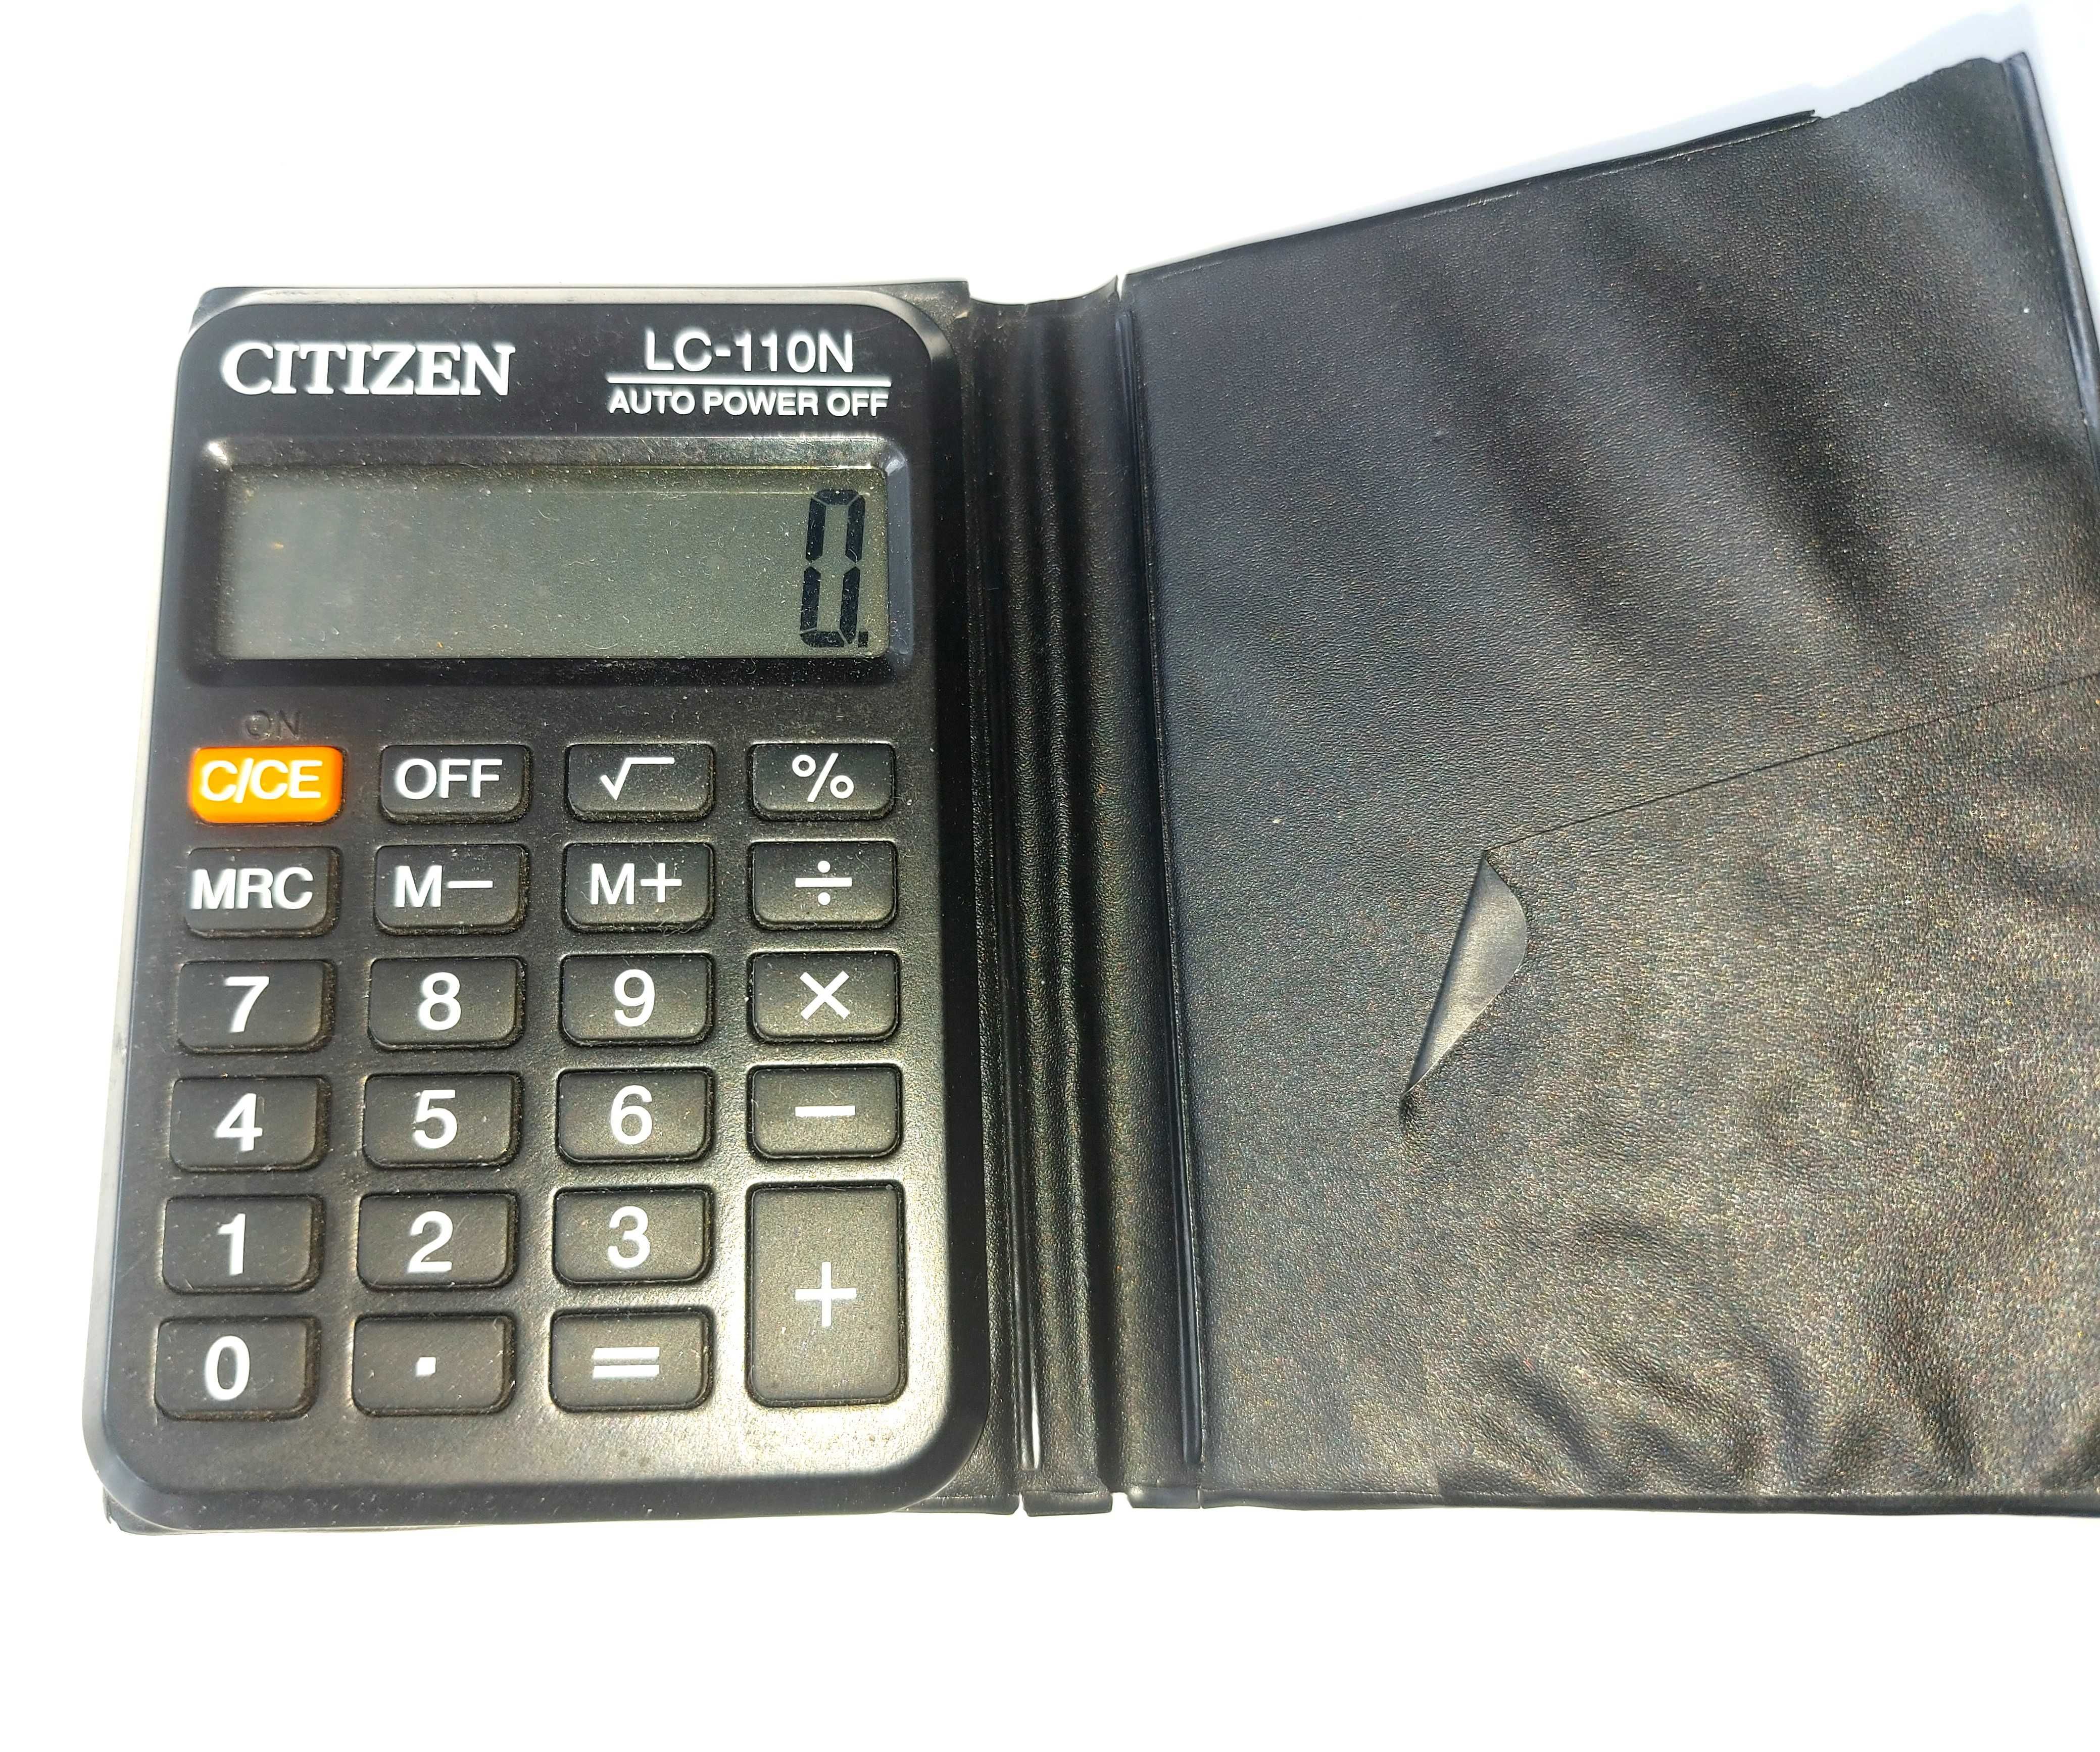 Mały Kieszonkowy Kalkulator Citizen LC-110N